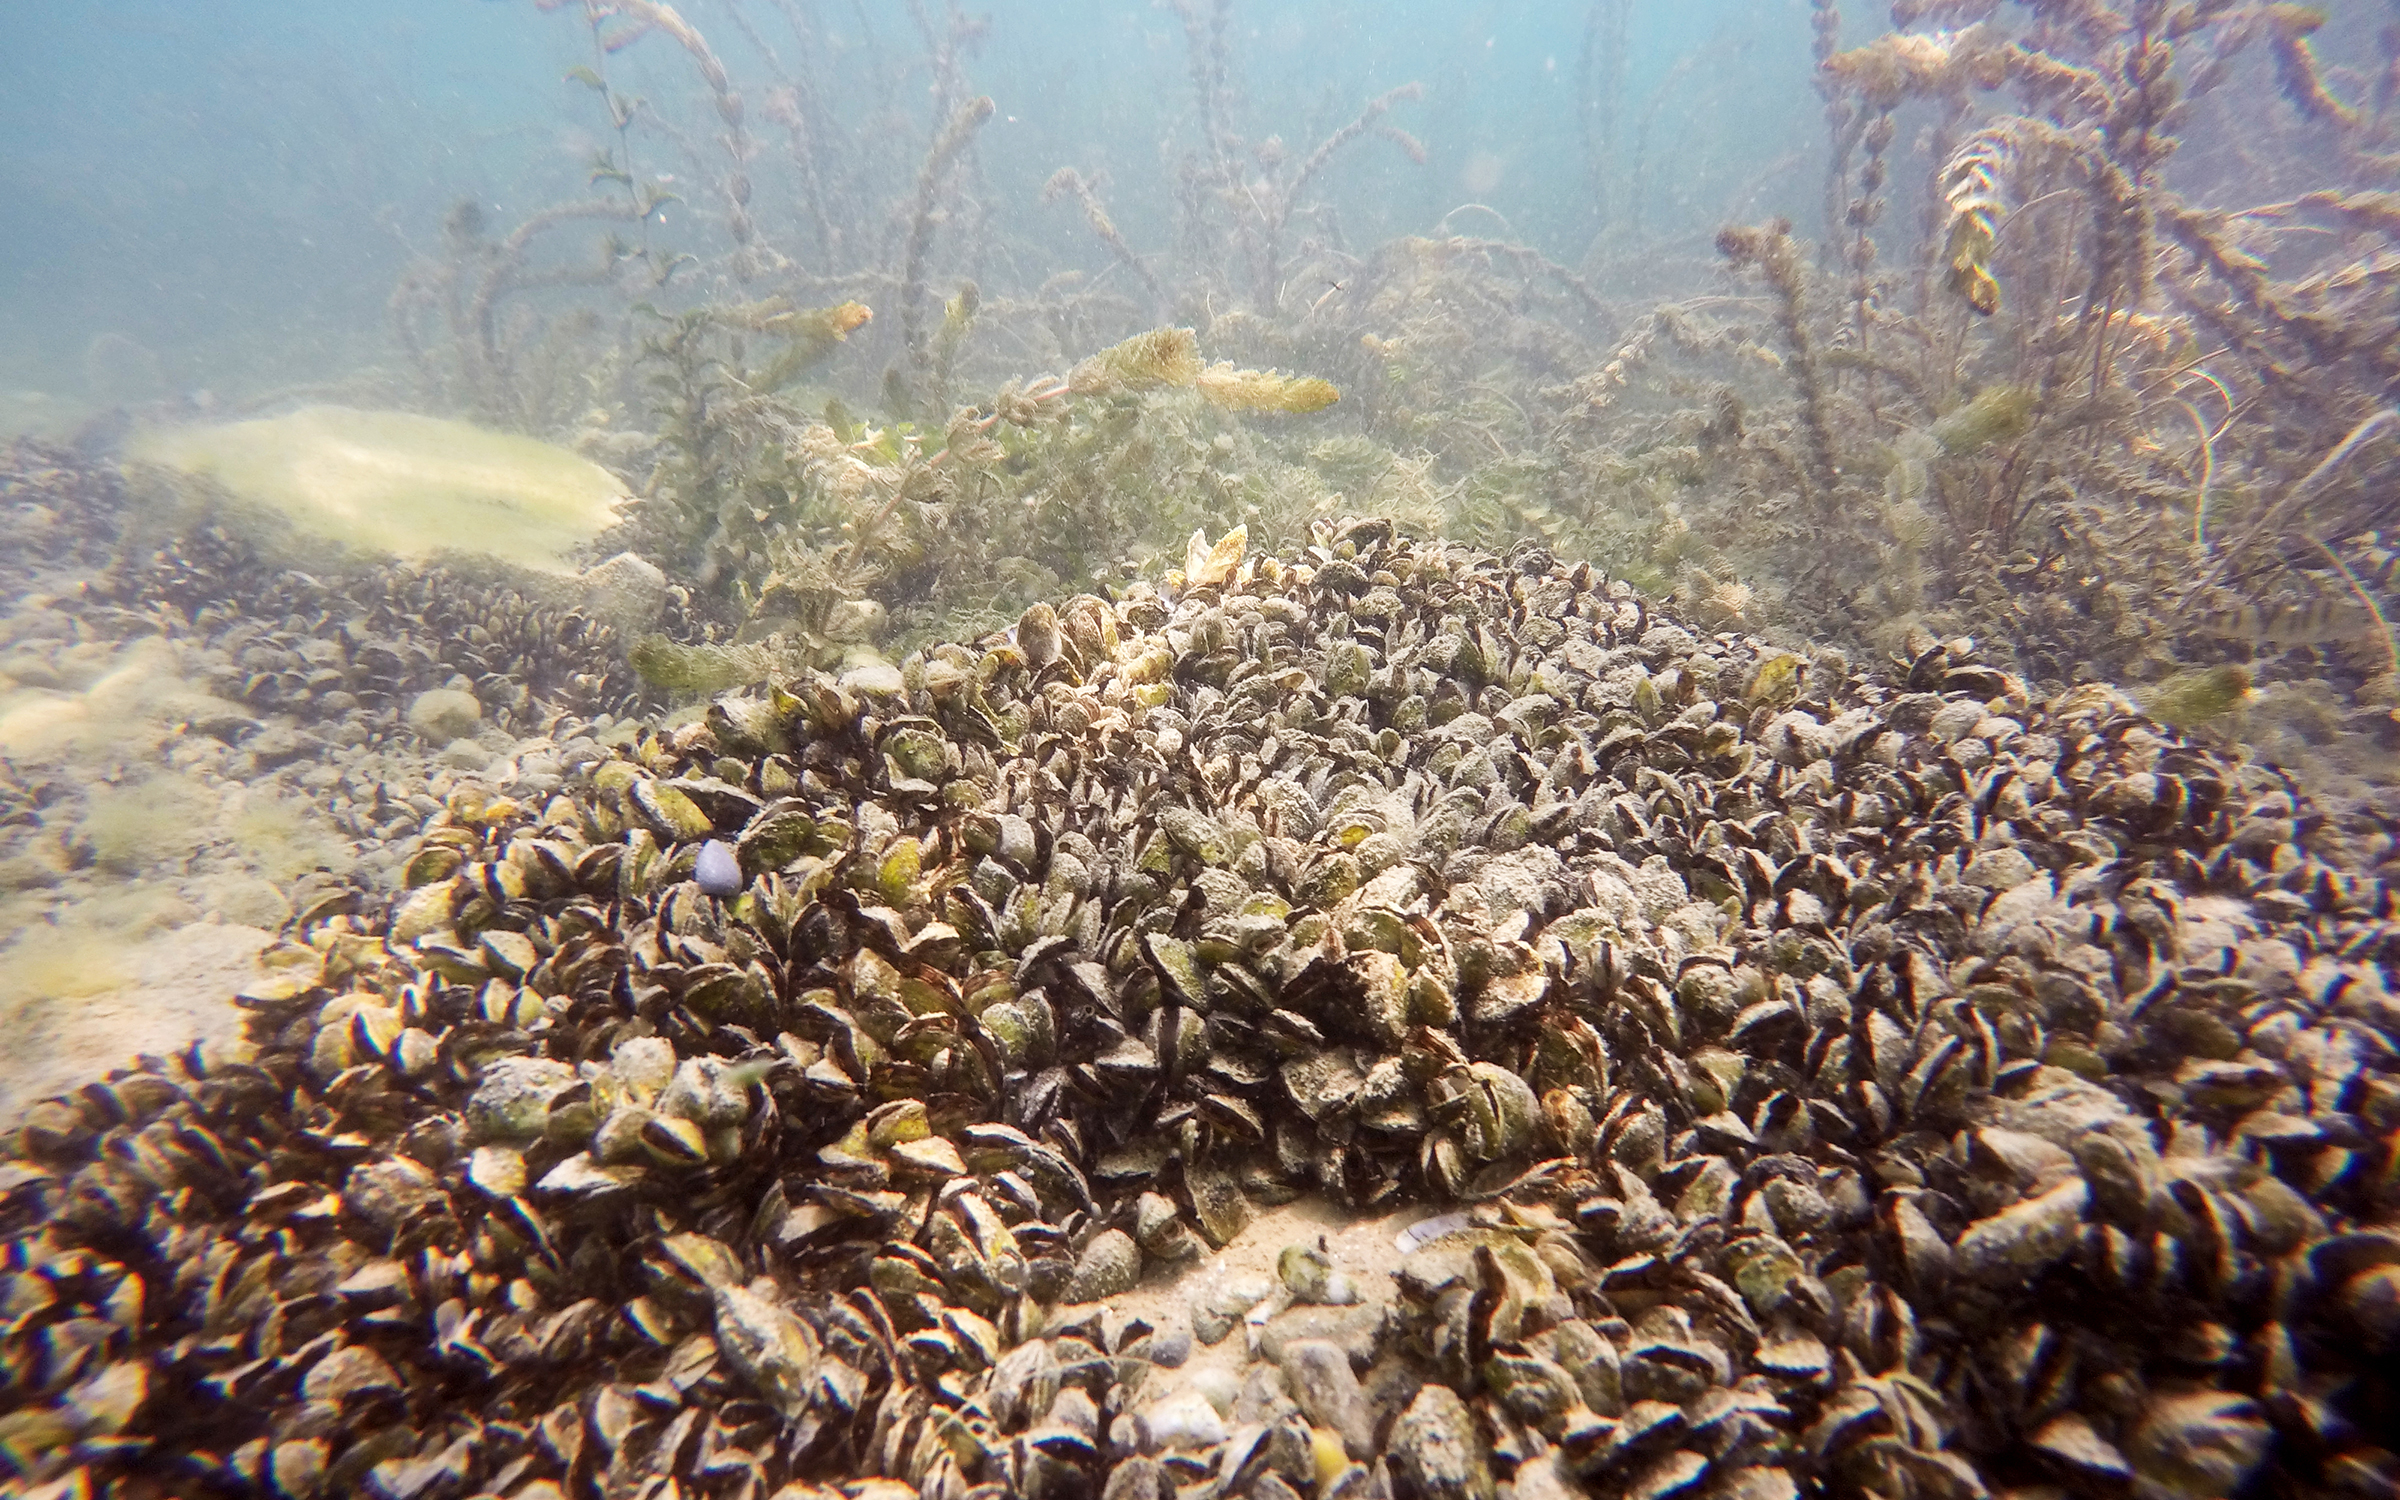 Invasive quagga mussels in Lake Geneva.